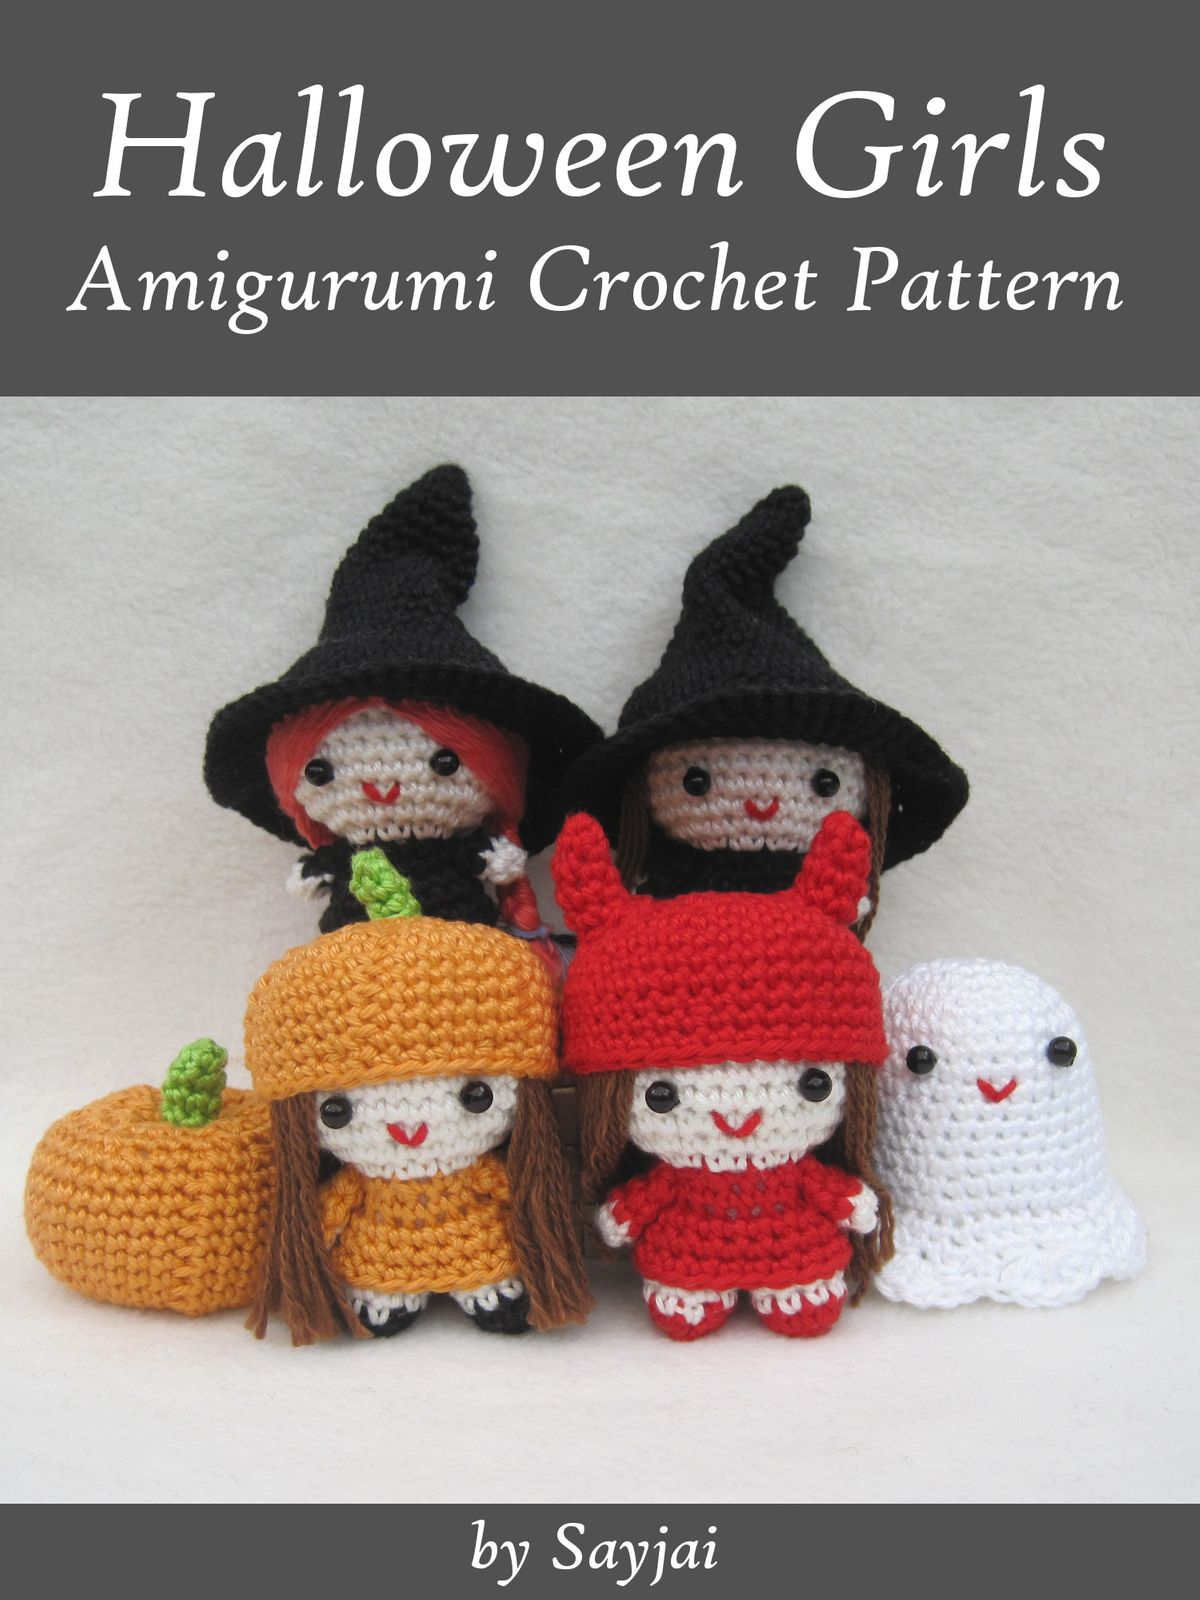 Halloween Crochet Patterns Halloween Girls Amigurumi Crochet Pattern Ebook Sayjai